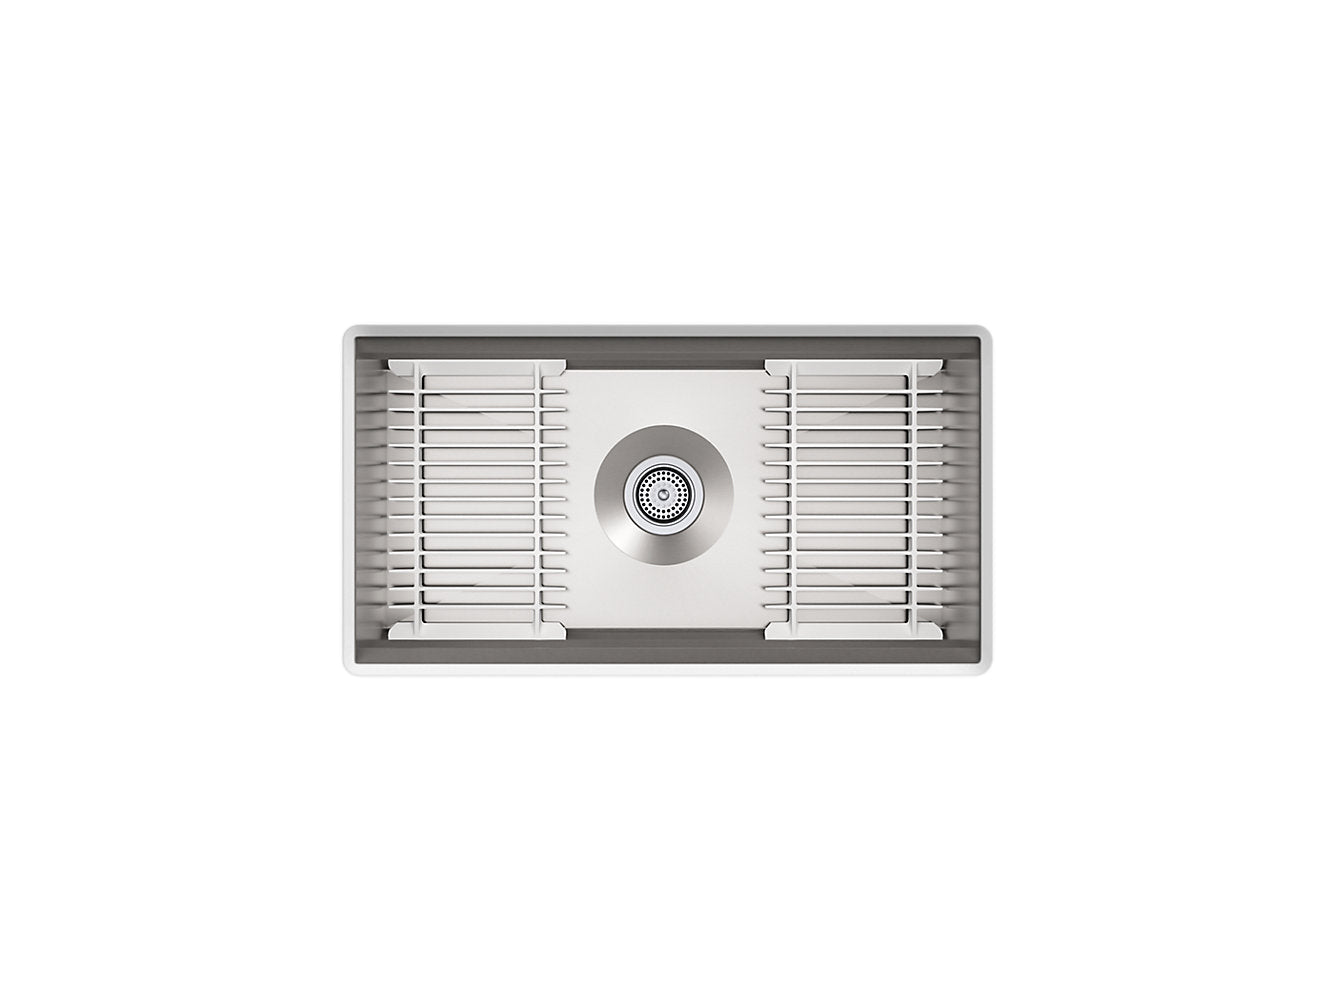 Kohler Prolific 33" x 17-3/4" x 10-15/16" Undermount Single Bowl Workstation Kitchen Sink With Accessories